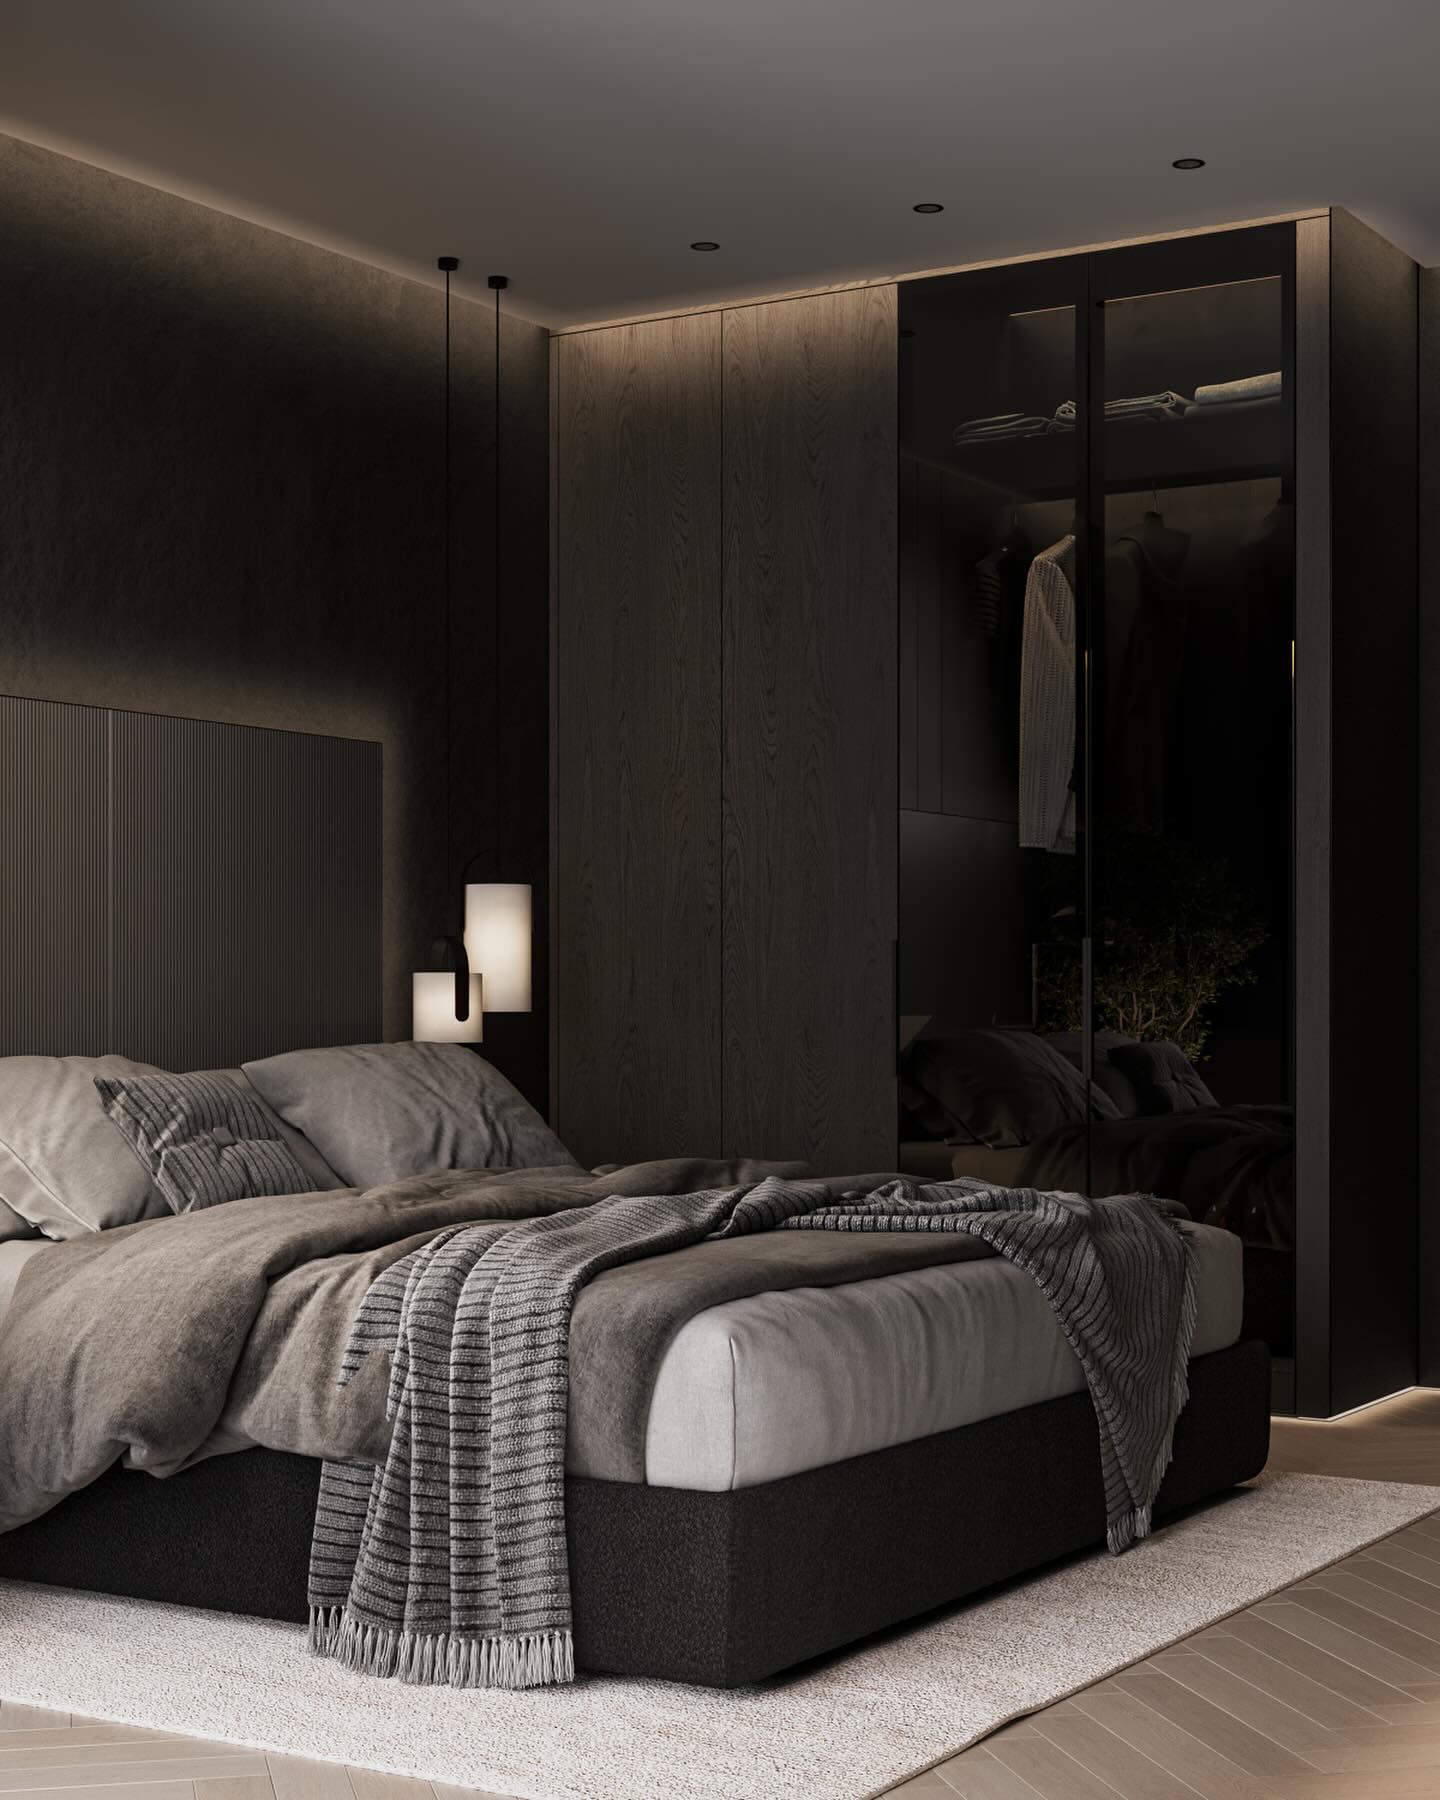 Elegant Bedroom Design